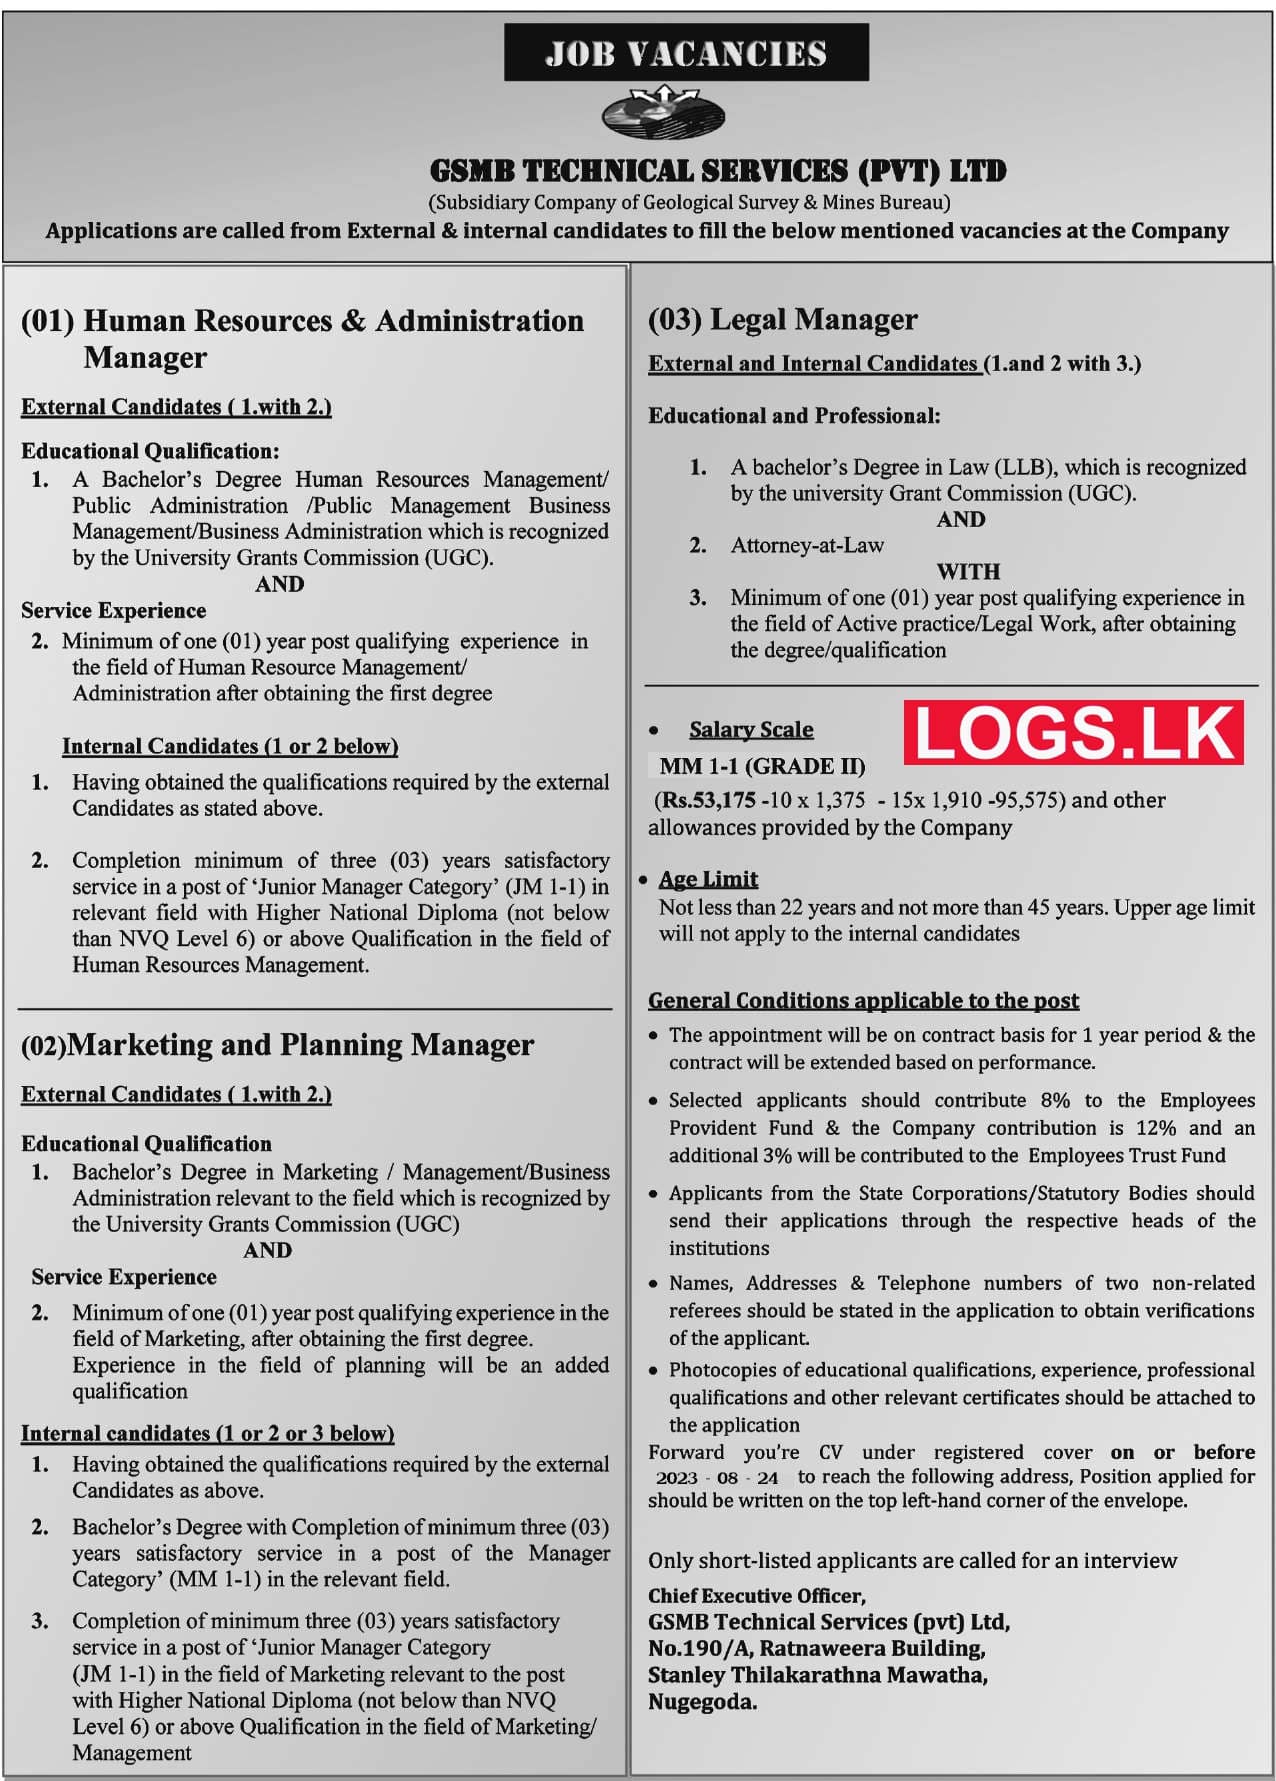 GSMB Technical Services Company Job Vacancies 2023